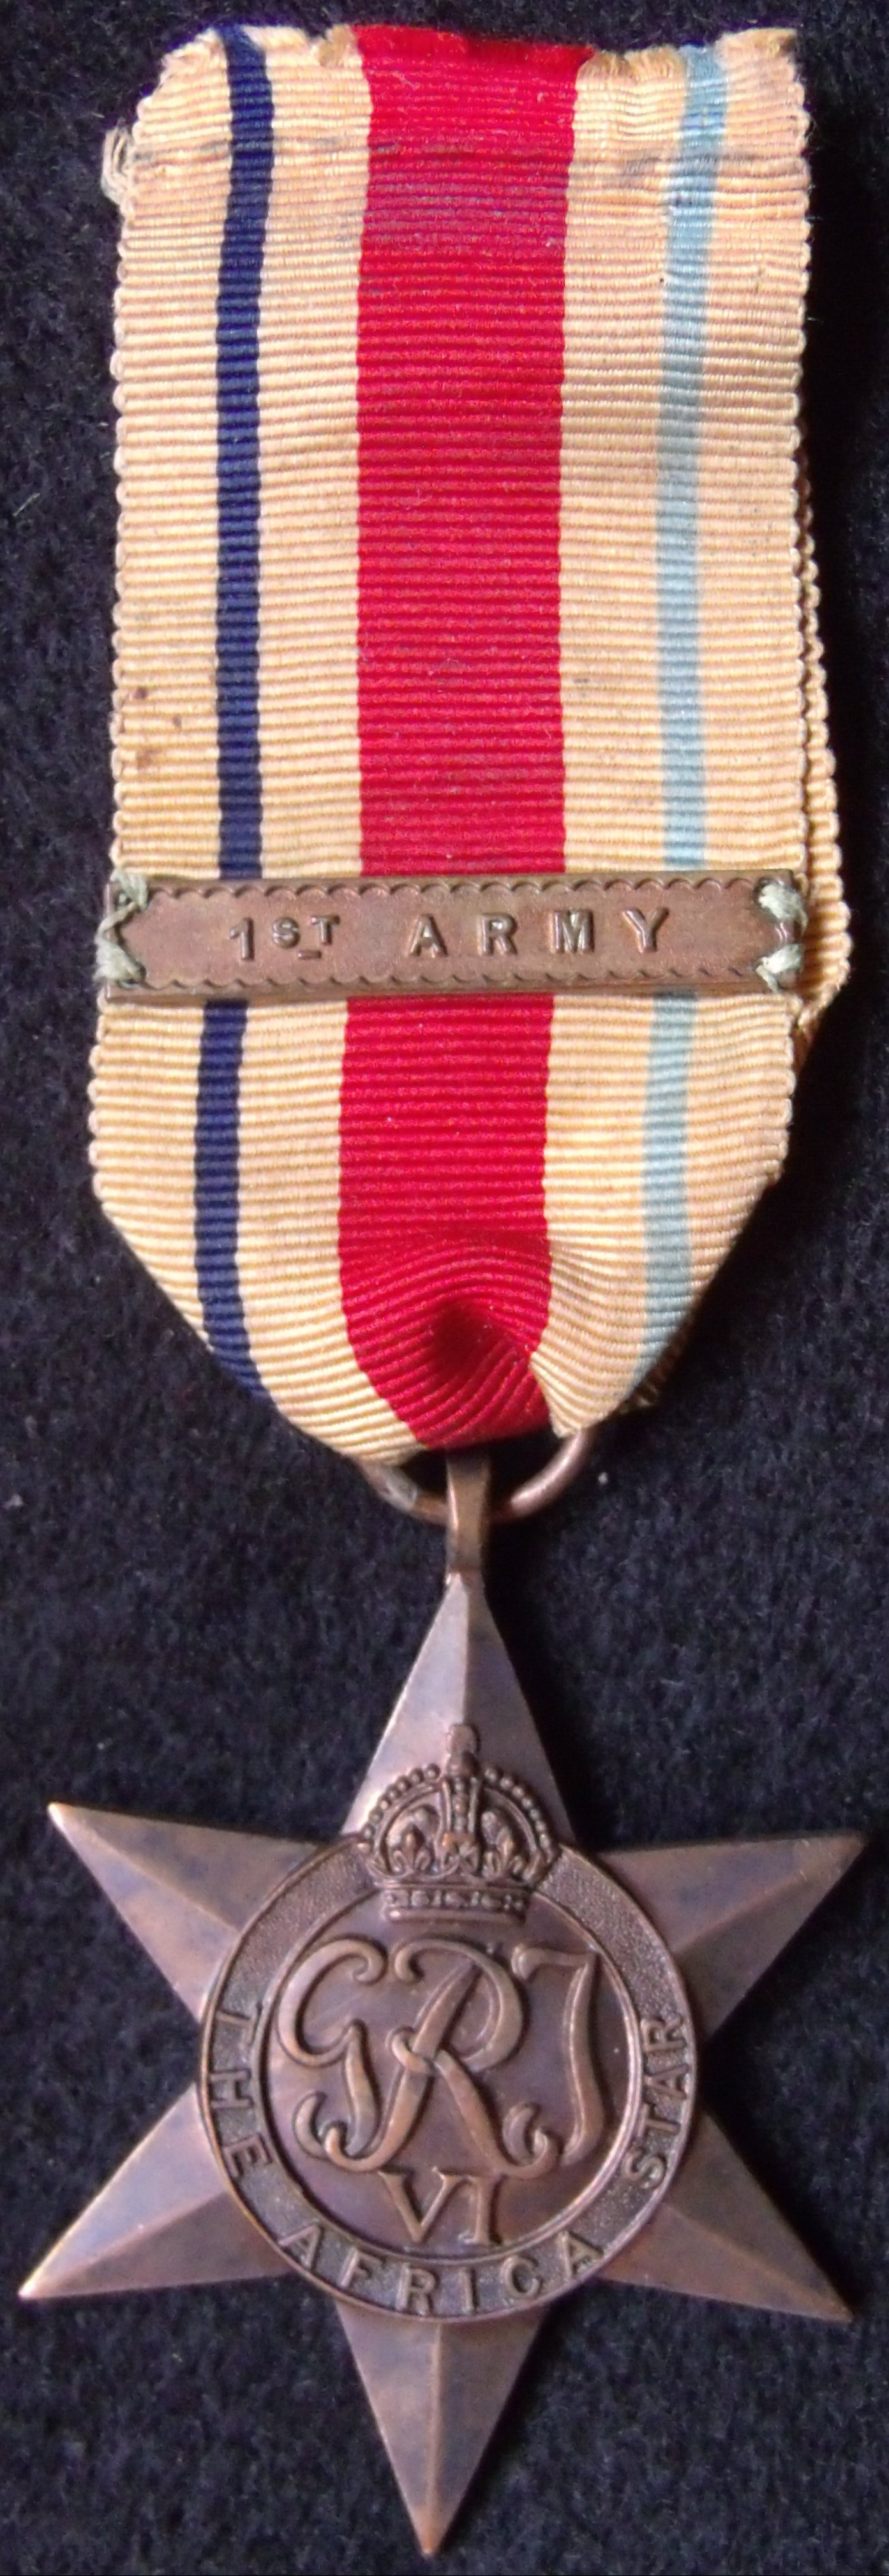 WW2 Africa Star 1st Army